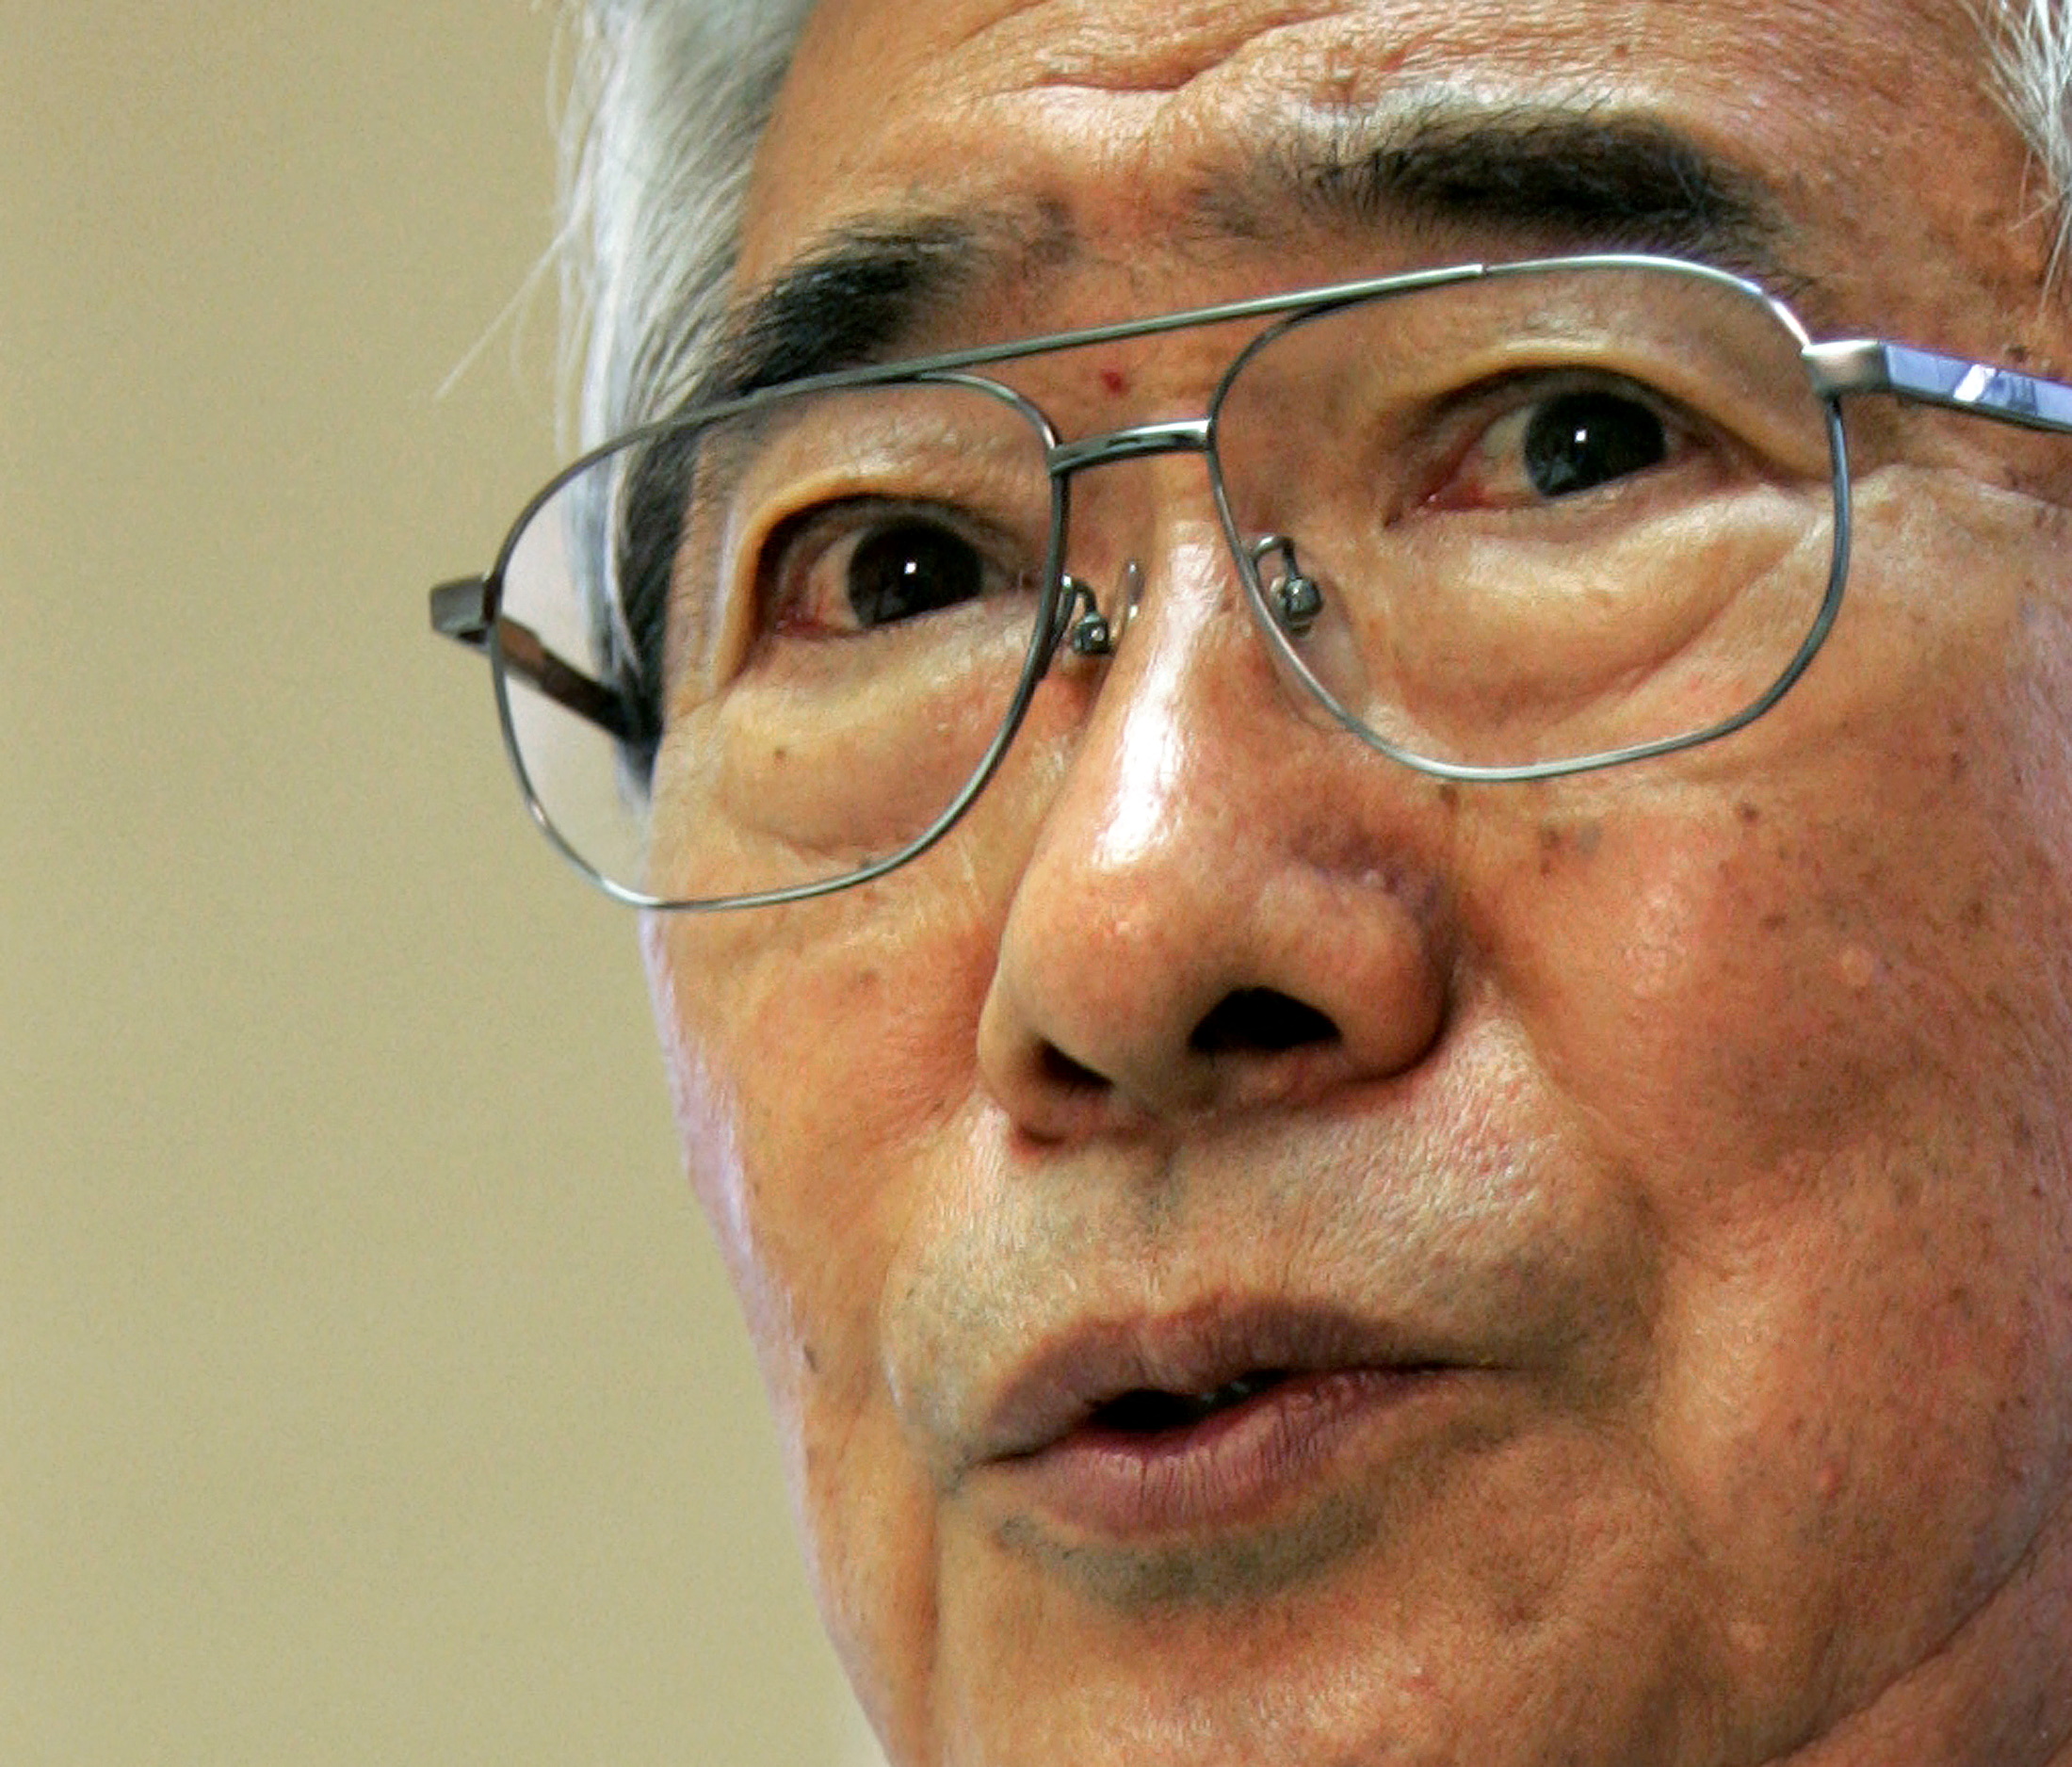 Tokyo governor Shintaro Ishihara